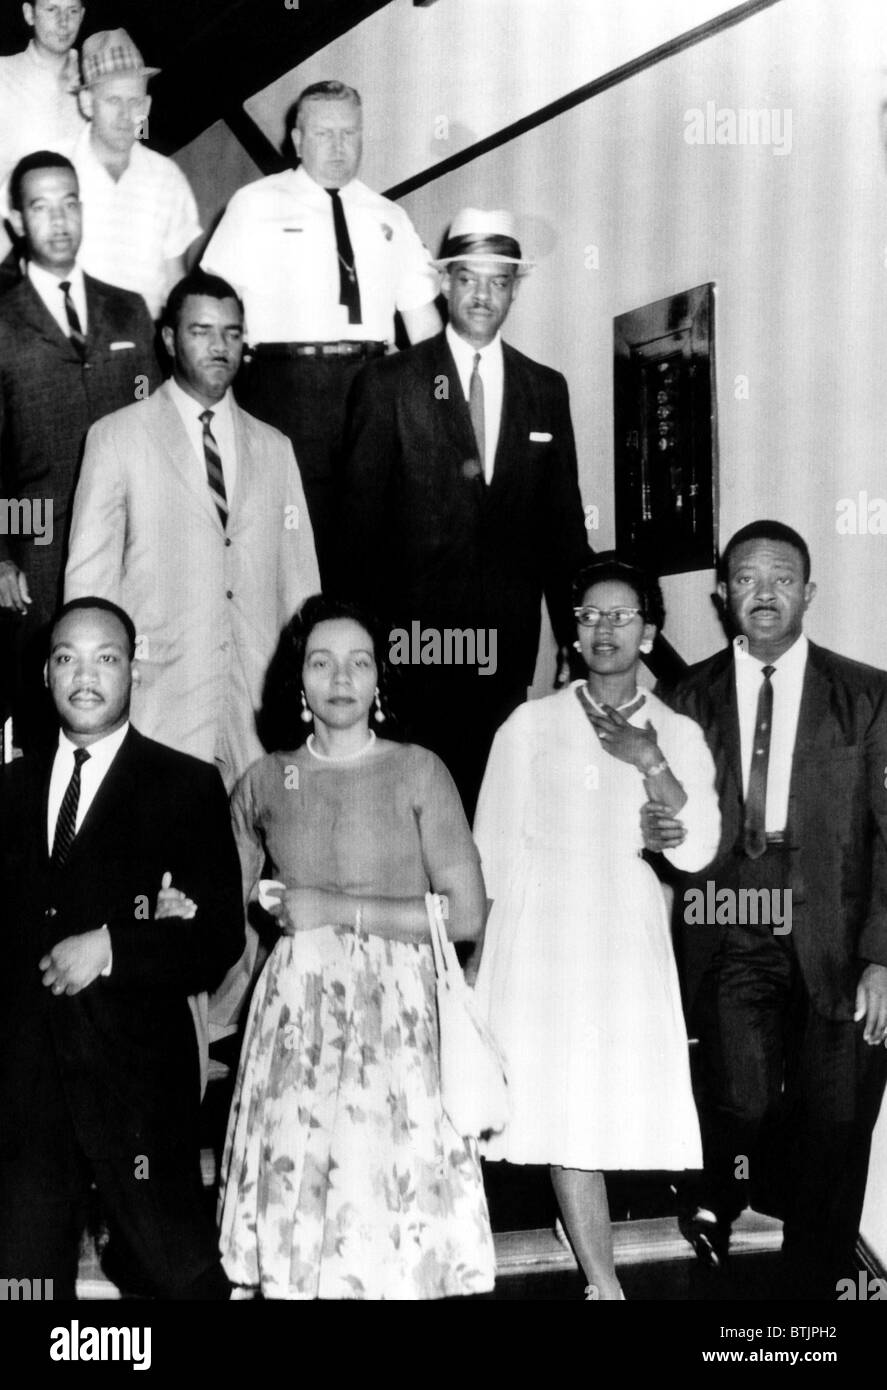 Rangée avant : Le révérend Martin Luther King, Coretta Scott King, Juanita Abernathy, le révérend Ralph Abernathy. Les révérends sont s Banque D'Images